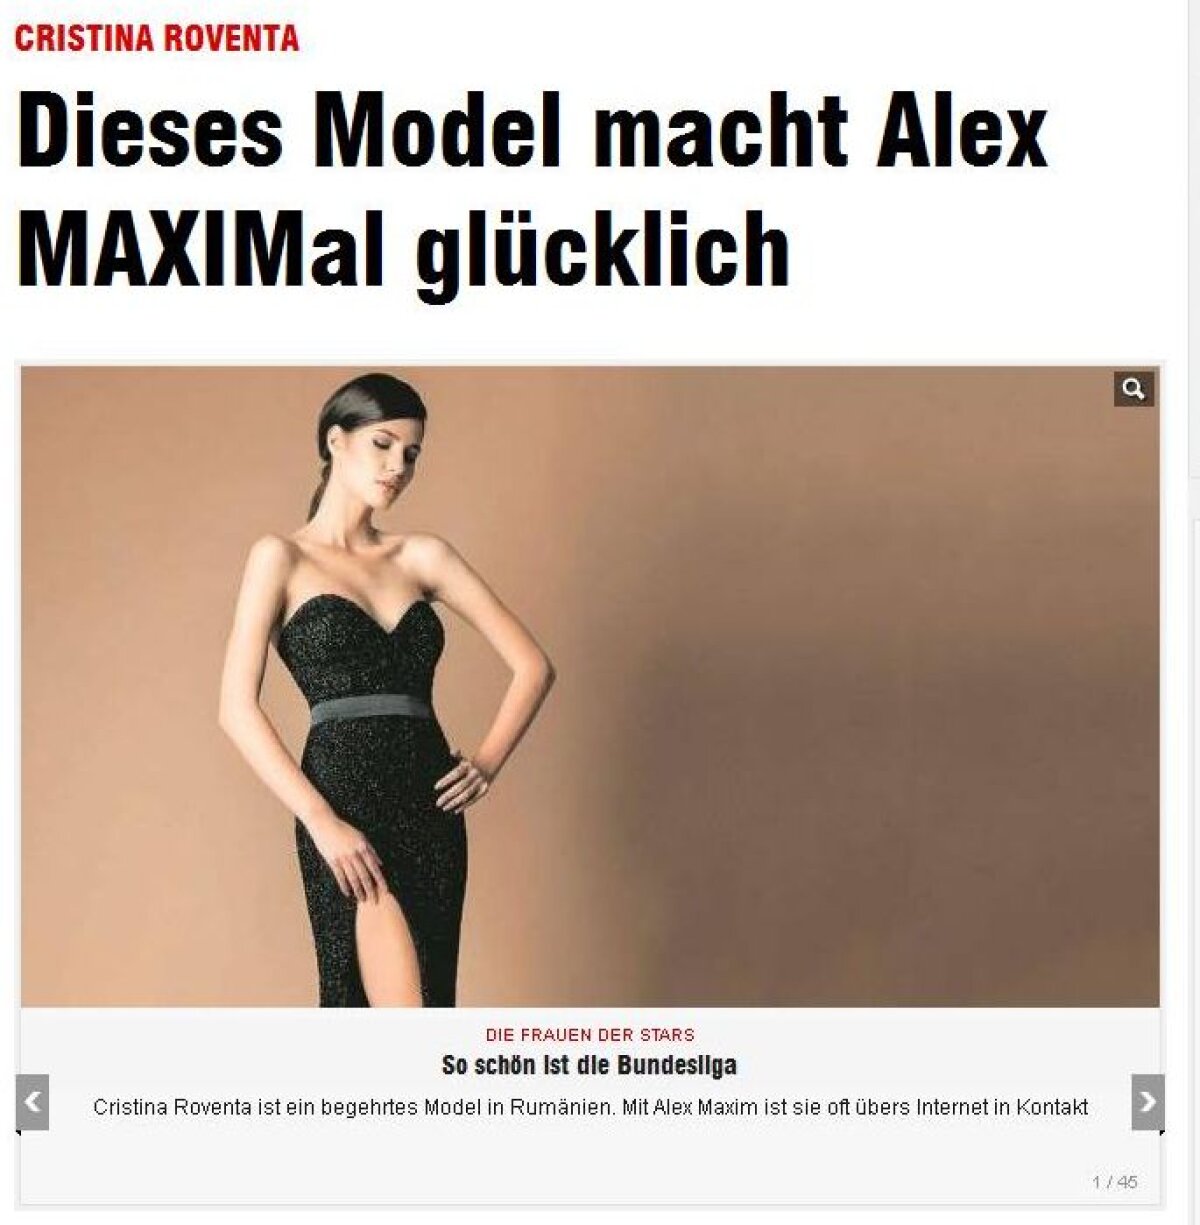 FOTO Presa germană o prezintă pe noua iubită a lui Maxim: "Miss Tourism Europe a primit de la Alex un ceas de 20.000 €"